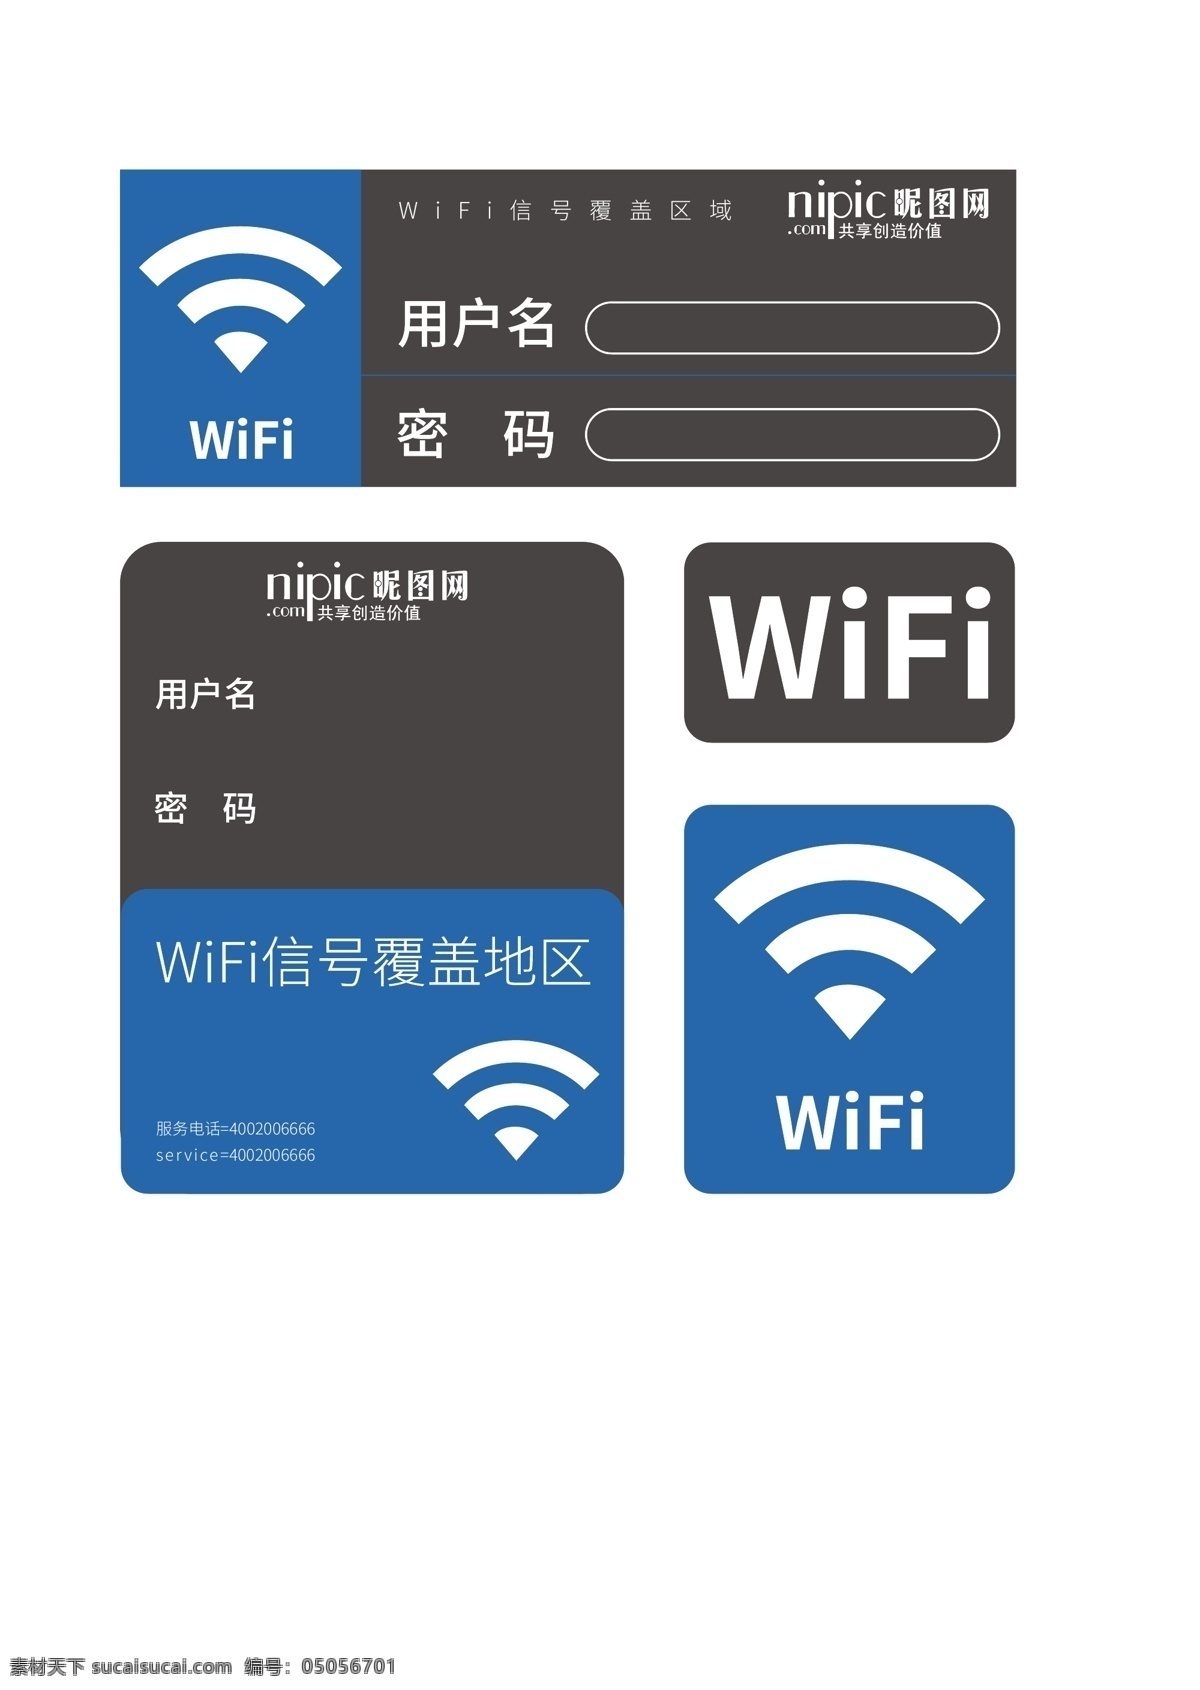 免费 wifi 网点 网络 信号 wifi开放 wifi广告 wifi信号 手机信号 信号广告